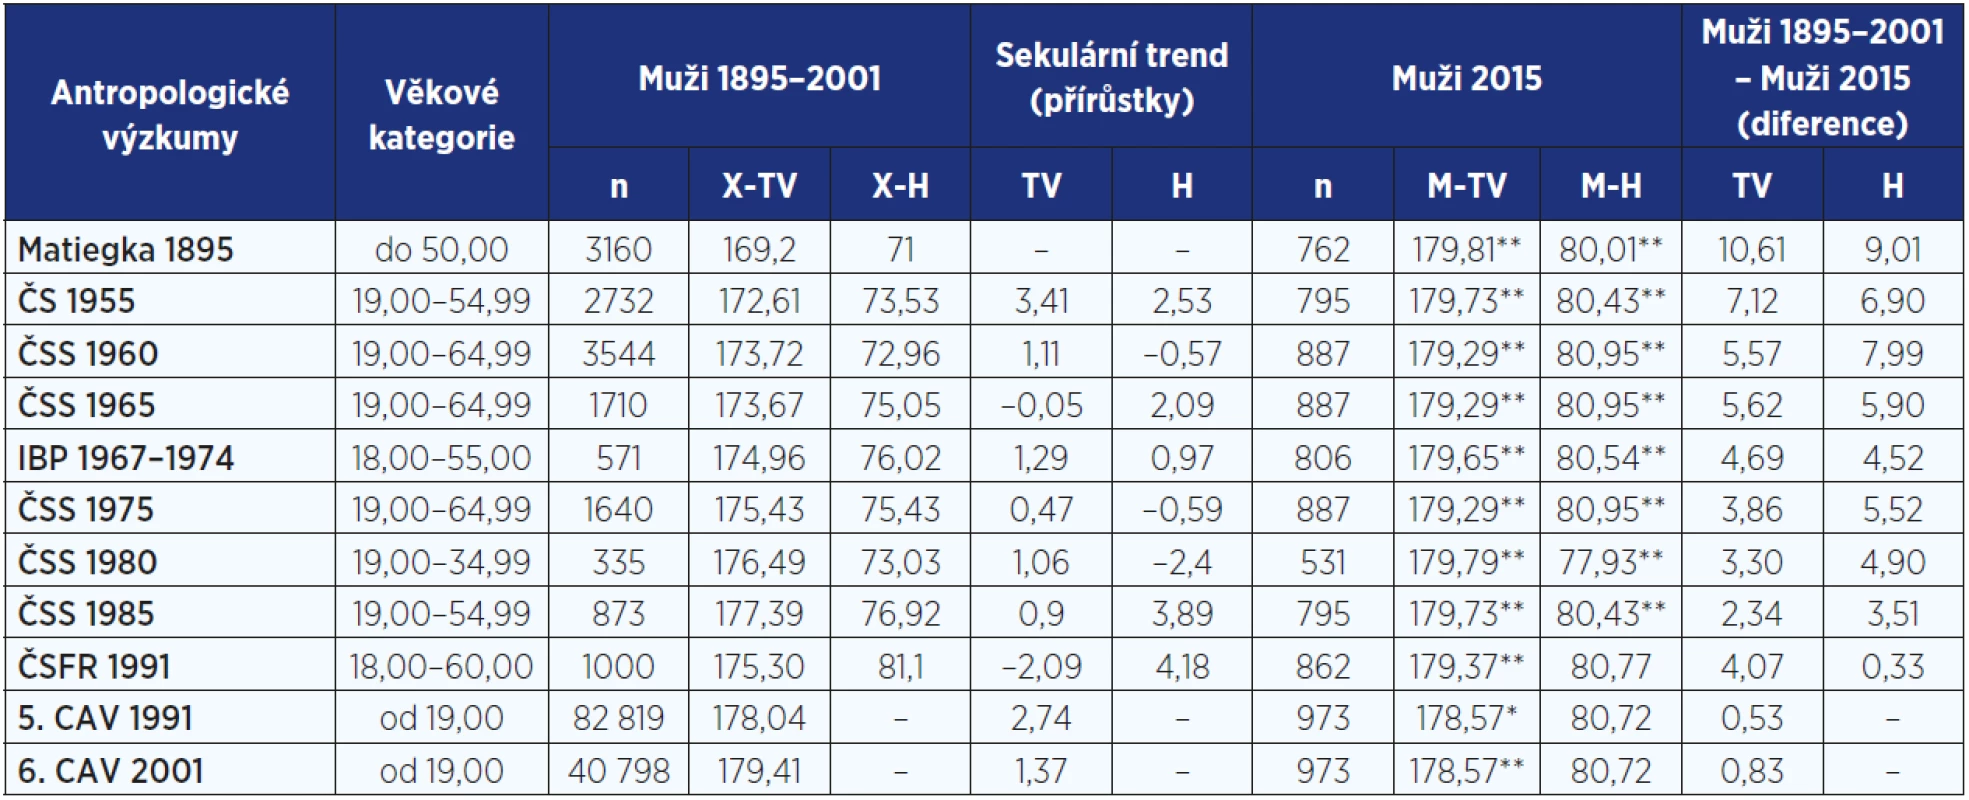 Sekulární trend tělesné výšky (cm) a hmotnosti (kg) u mužů od roku 1895 do roku 2015